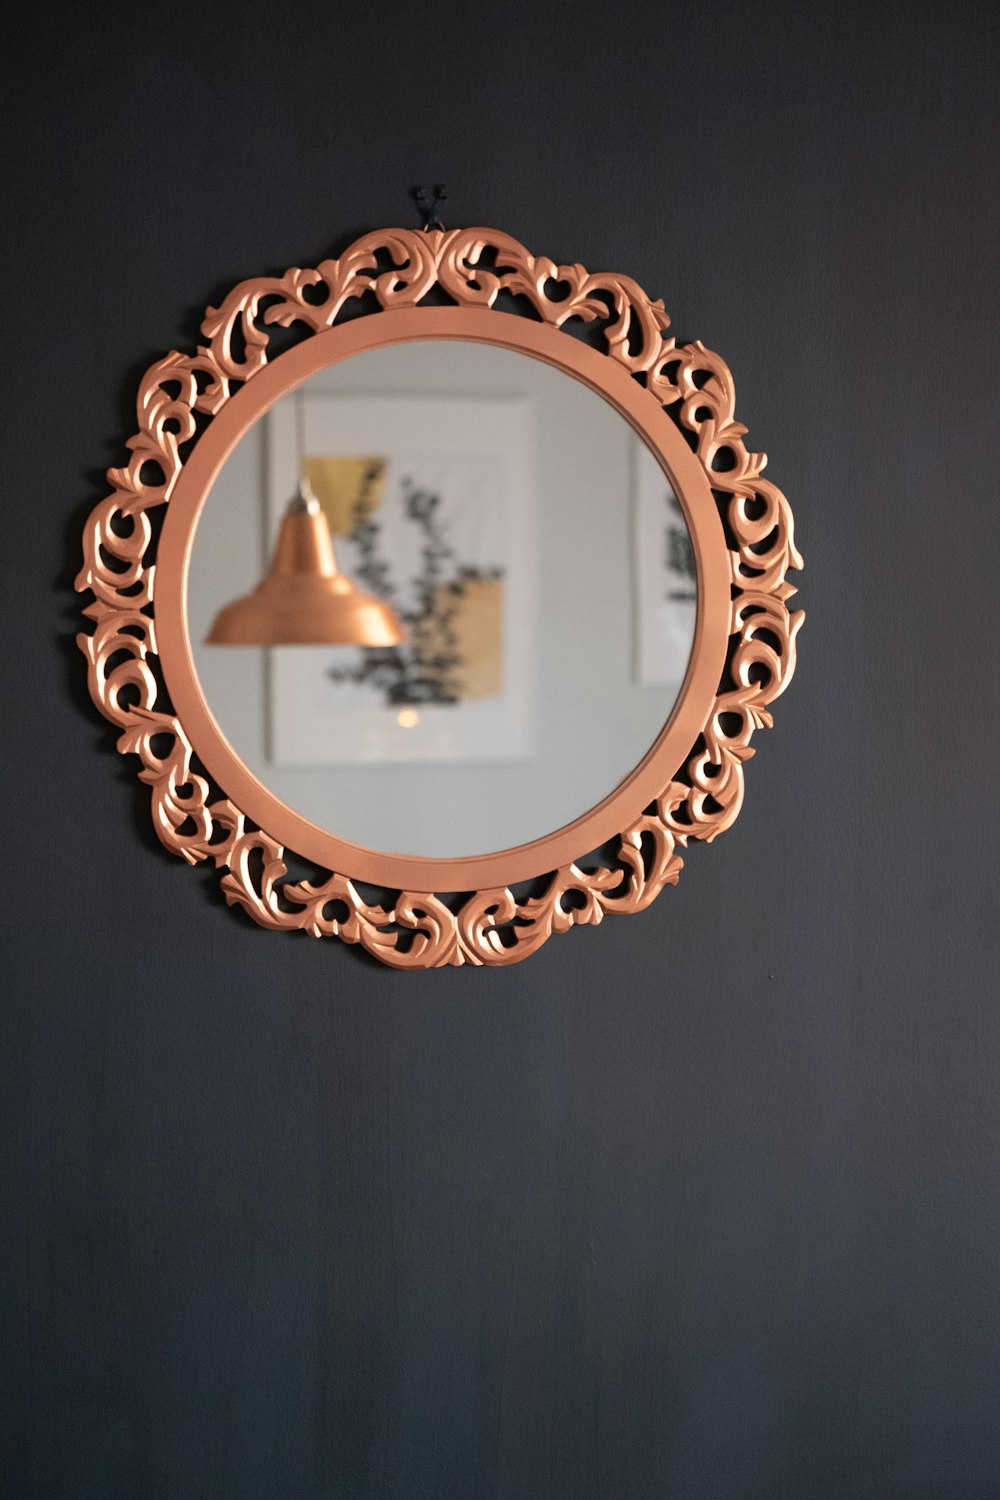 brass round framed mirror on black textile